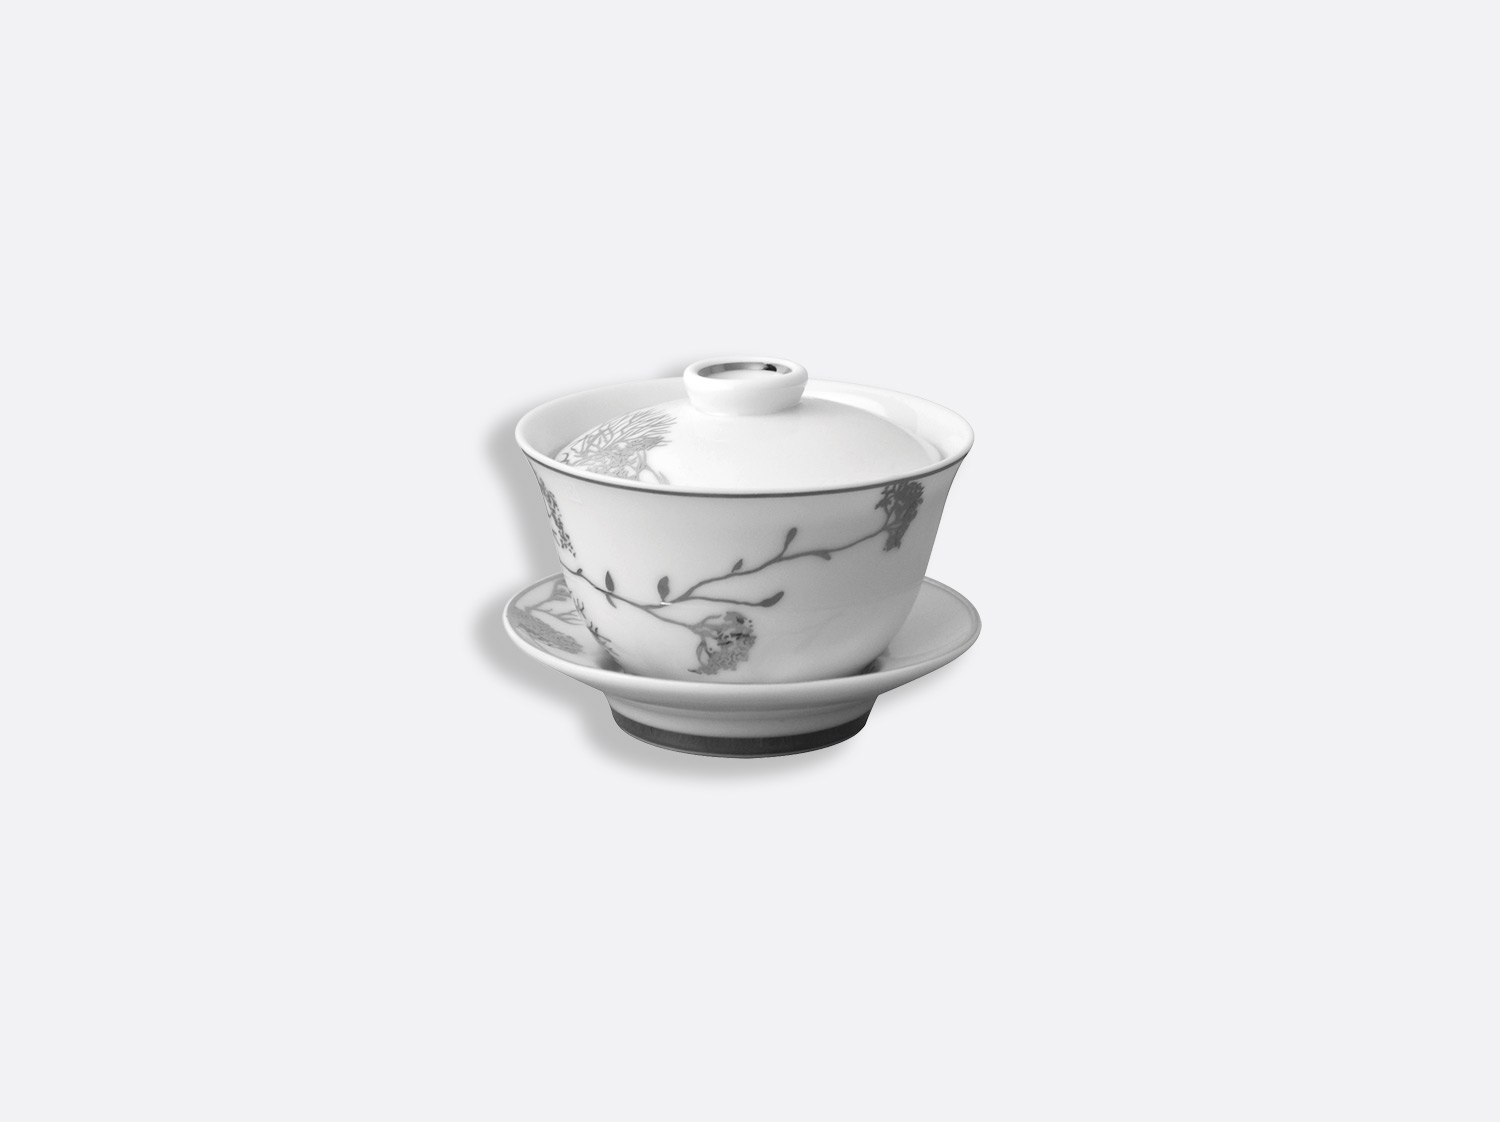 Petite tasse thé couverte 10 cl en porcelaine de la collection Promenade Bernardaud